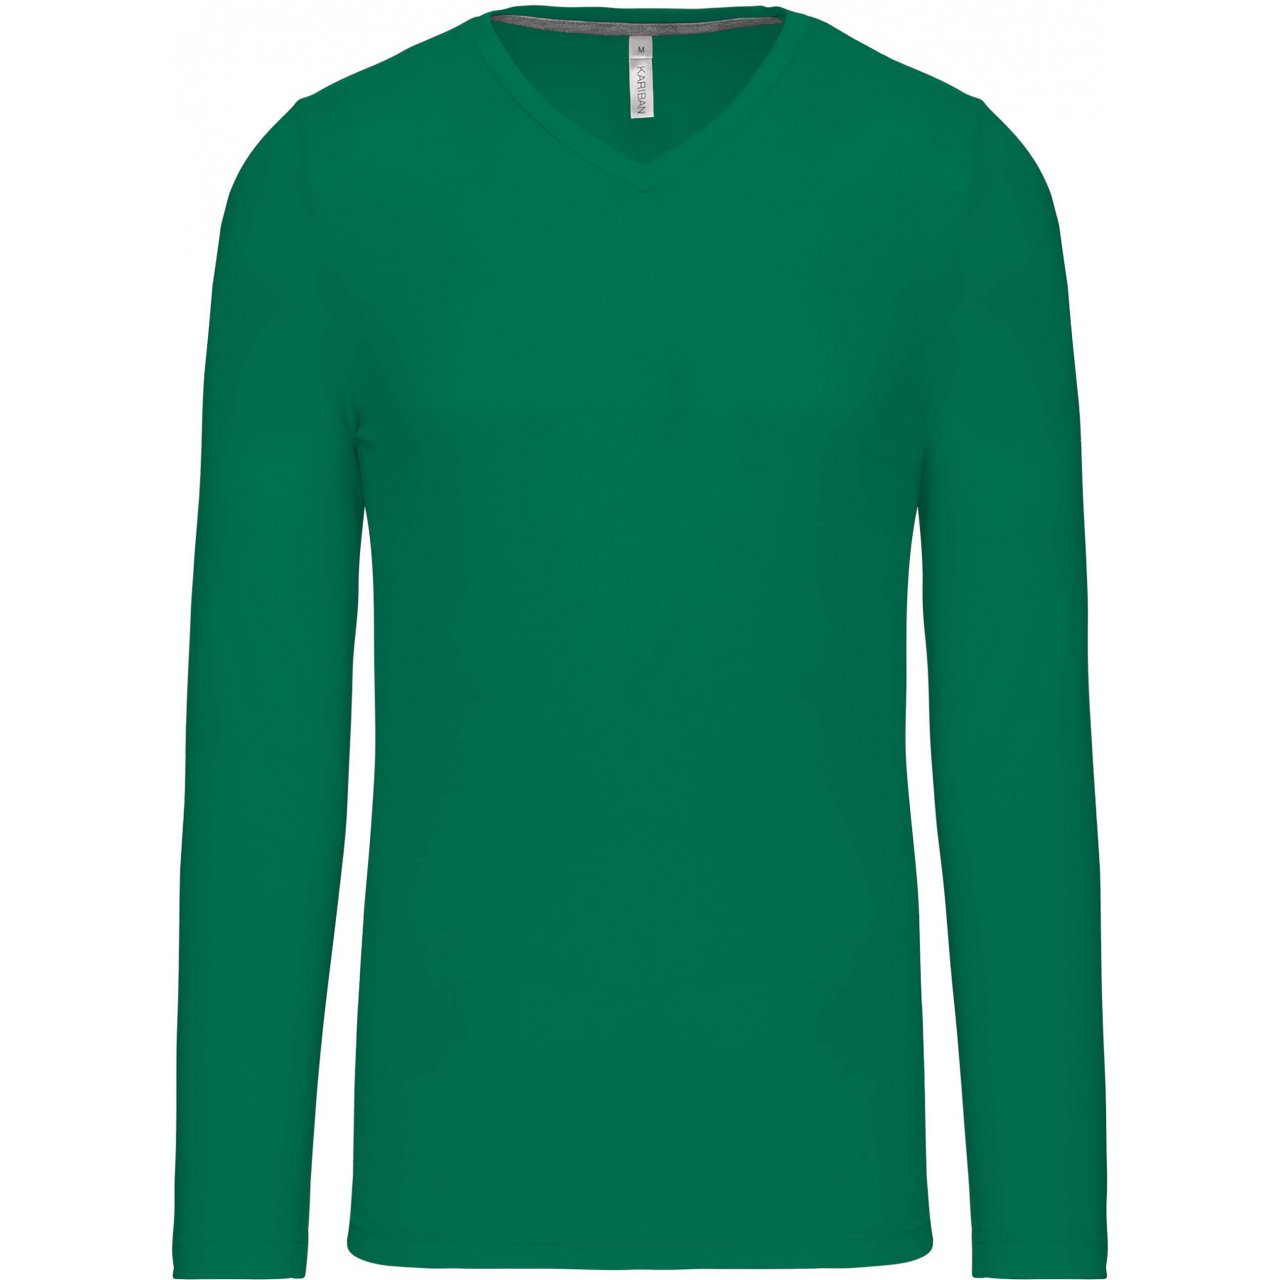 Pánské tričko Kariban dlouhý rukáv V-neck - zelené, M